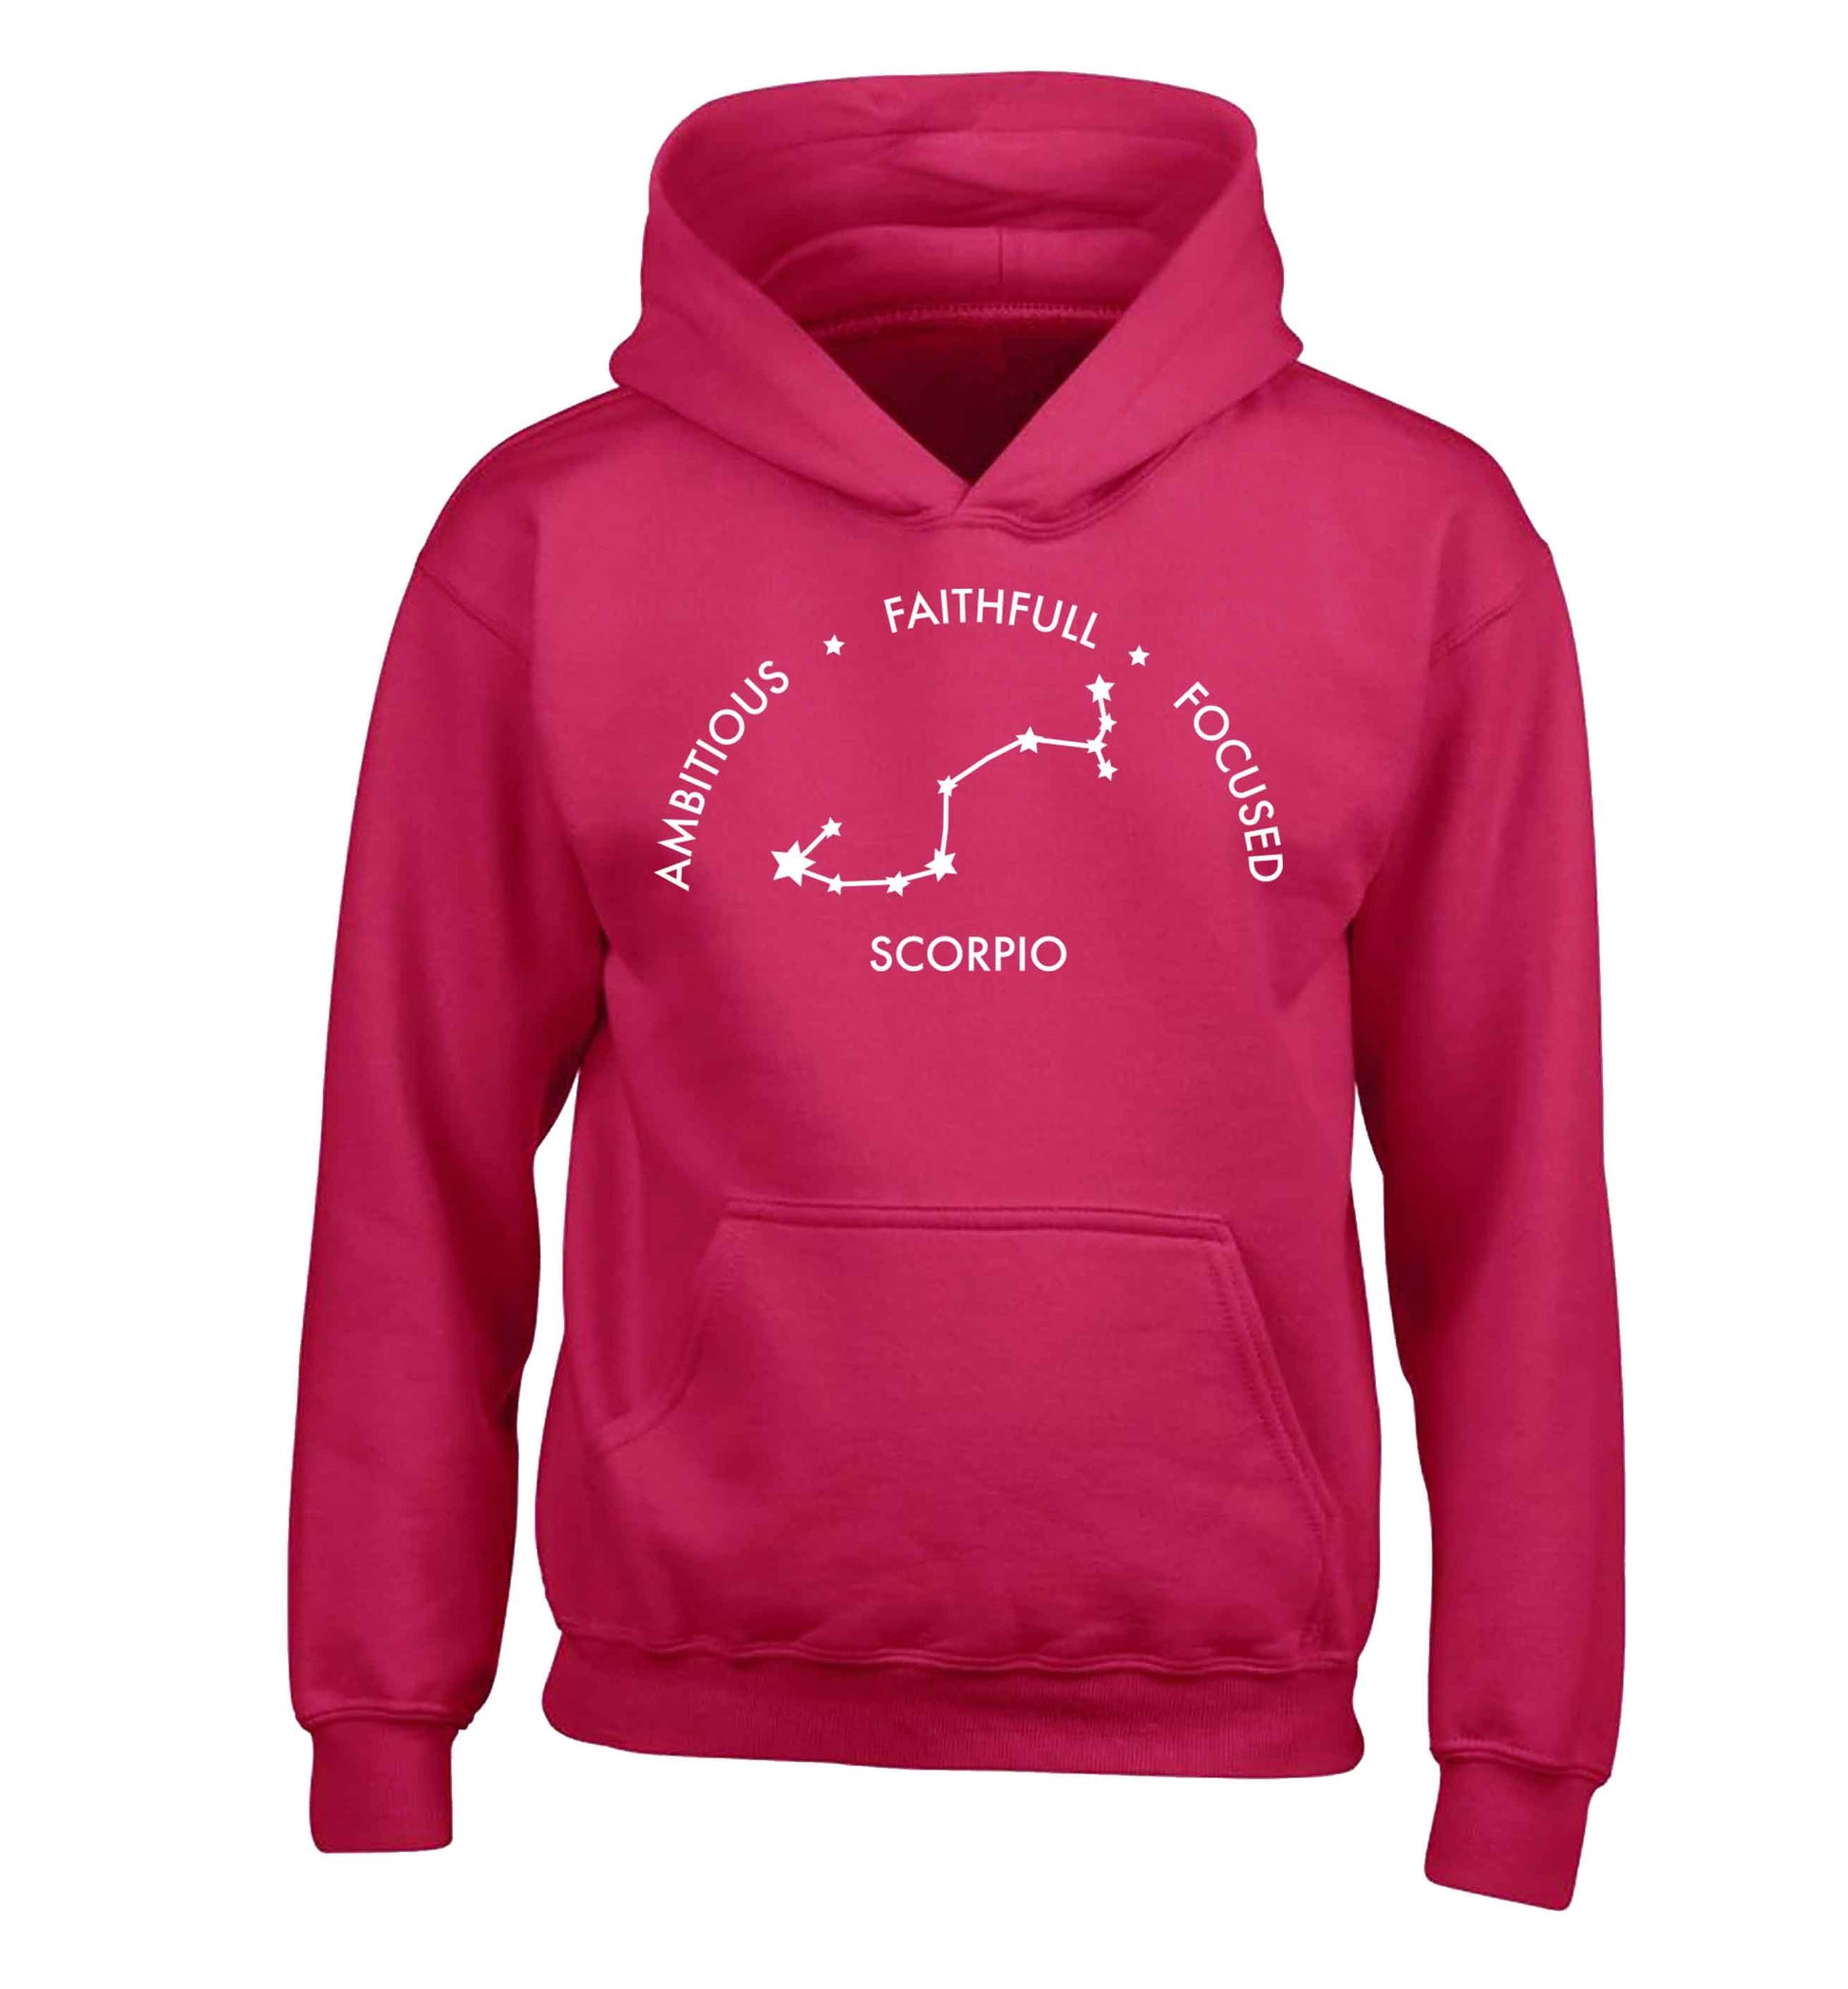 Scorpio, ambitious, faithfull, focused children's pink hoodie 12-13 Years